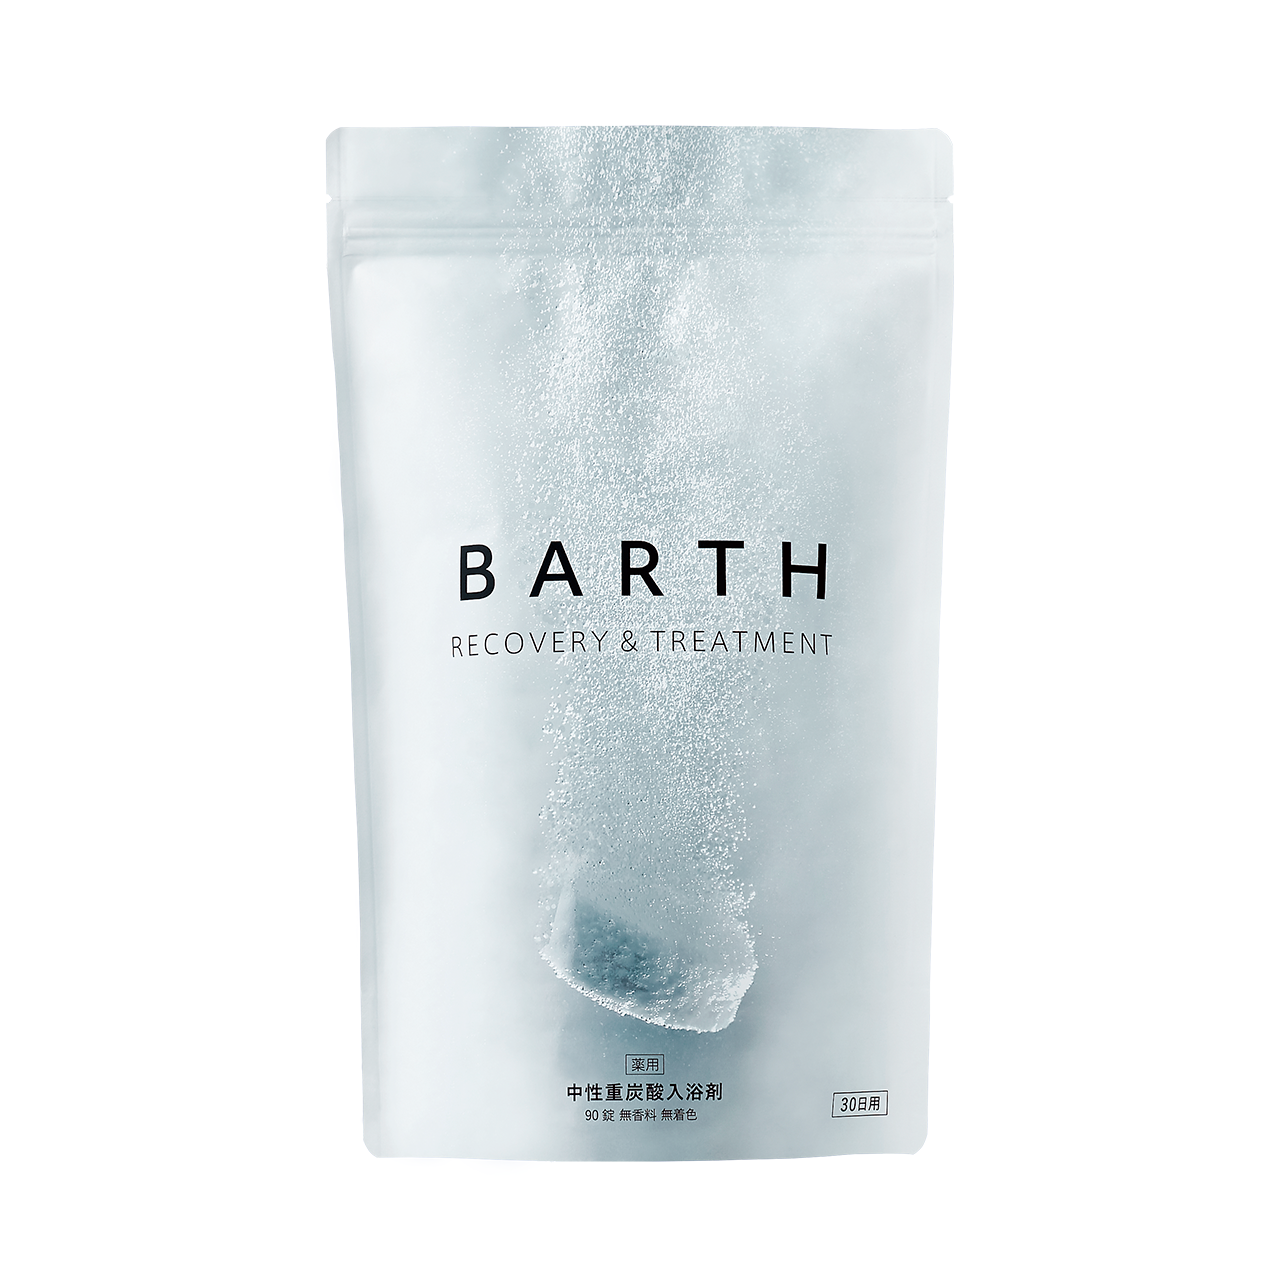 BARTTH 中性重炭酸入浴剤の商品画像